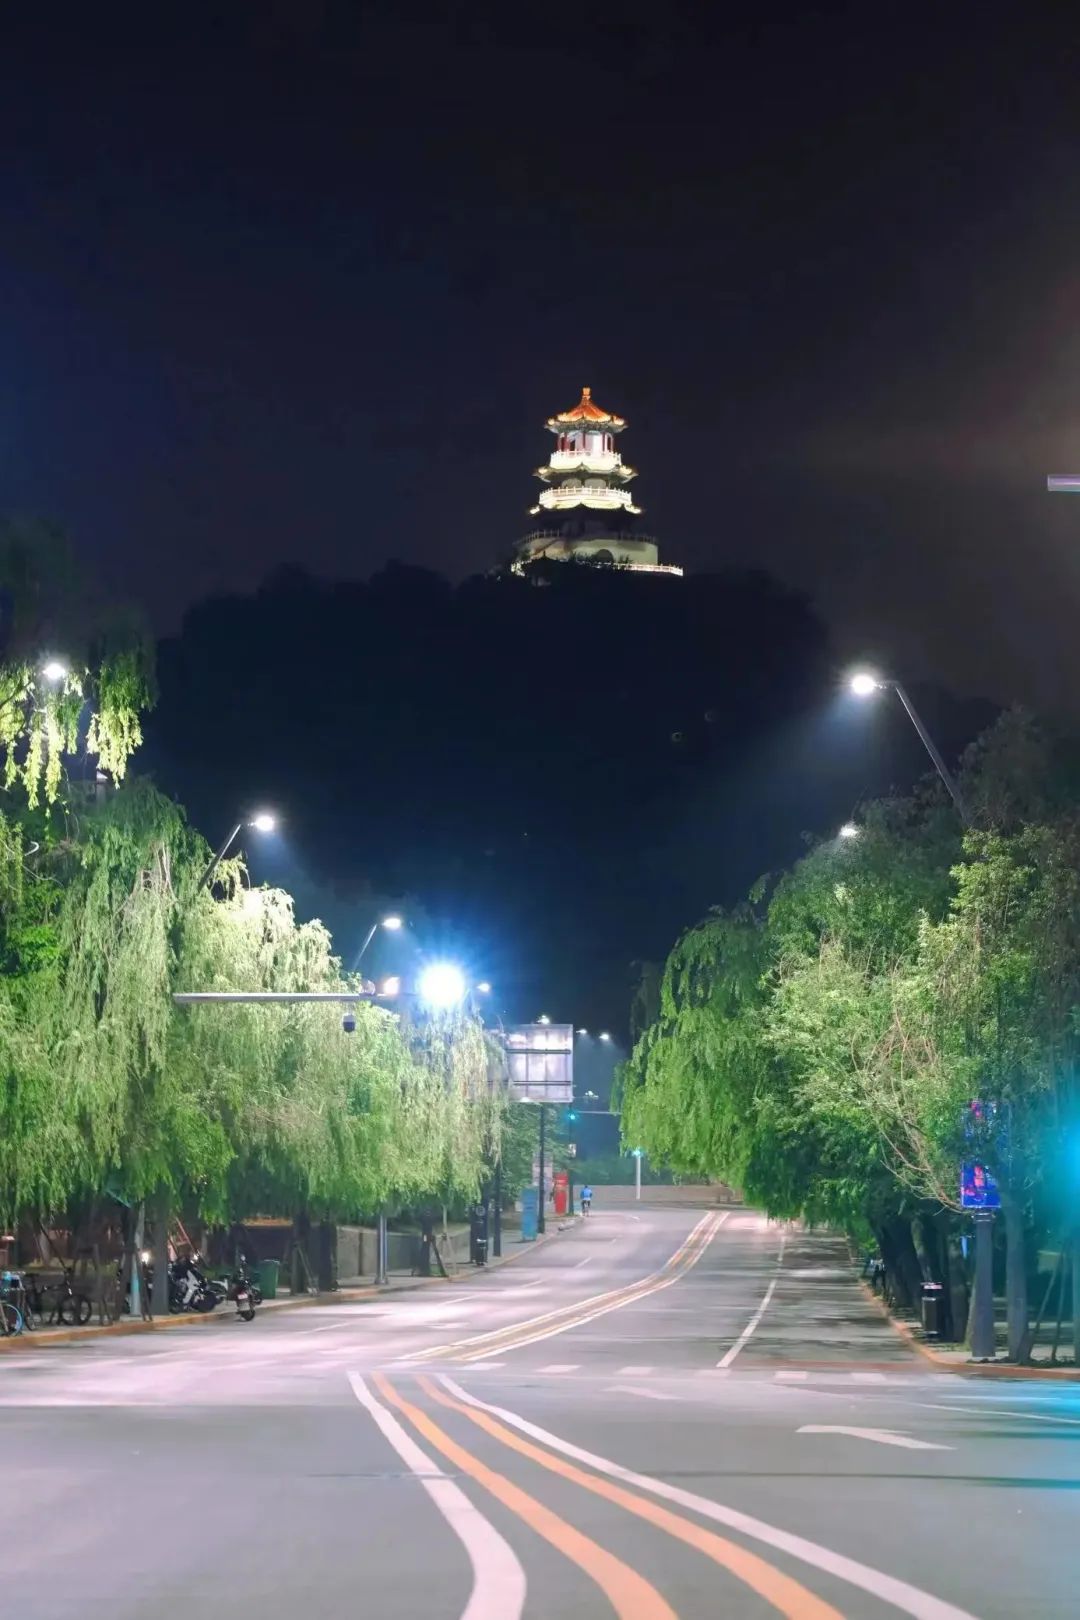 2023中国科幻大会炫酷灯光亮相北京石景山